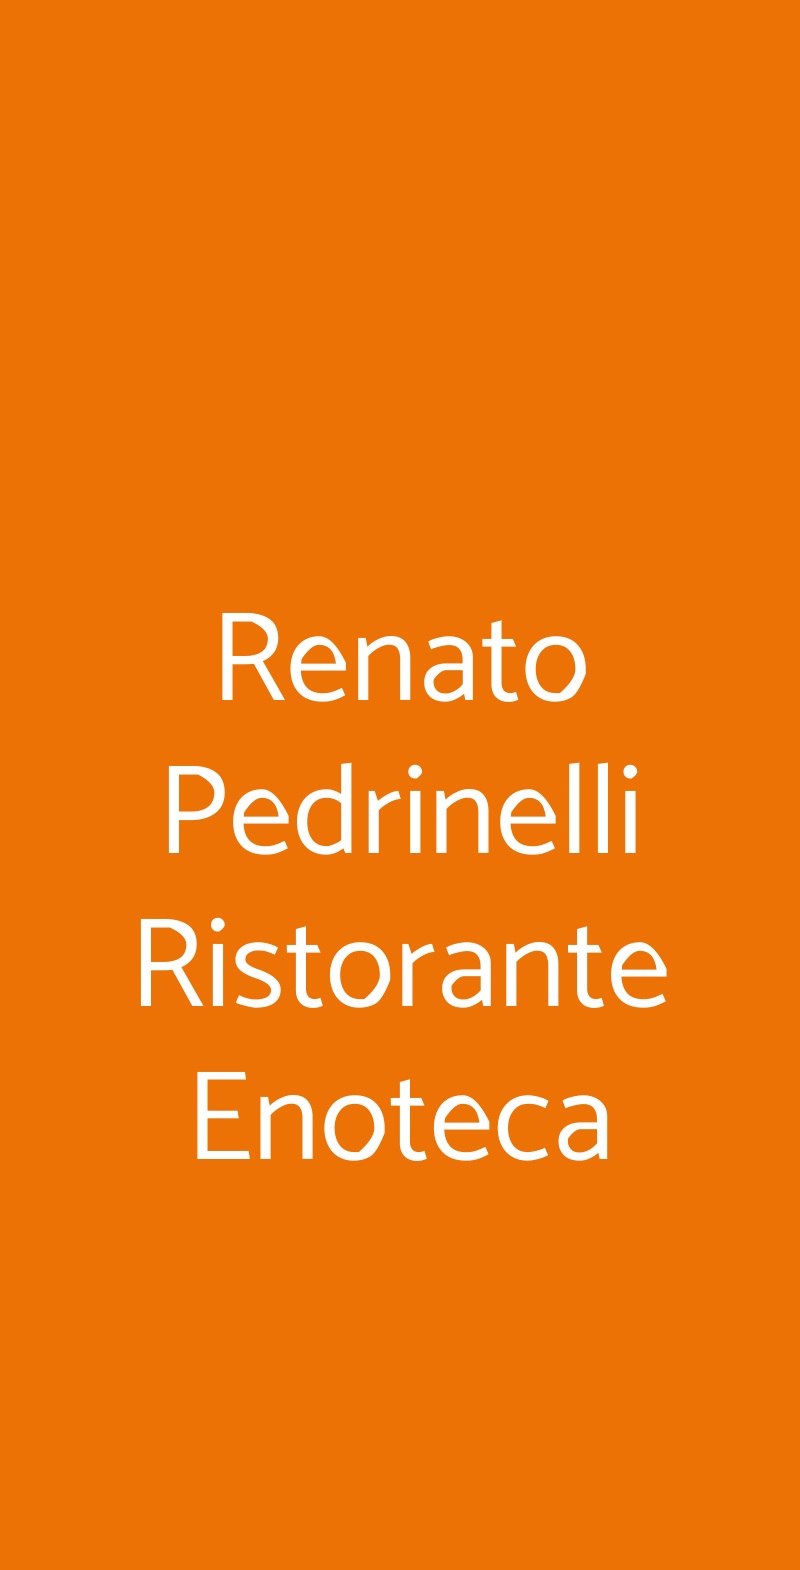 Renato Pedrinelli Ristorante Enoteca Arzachena menù 1 pagina